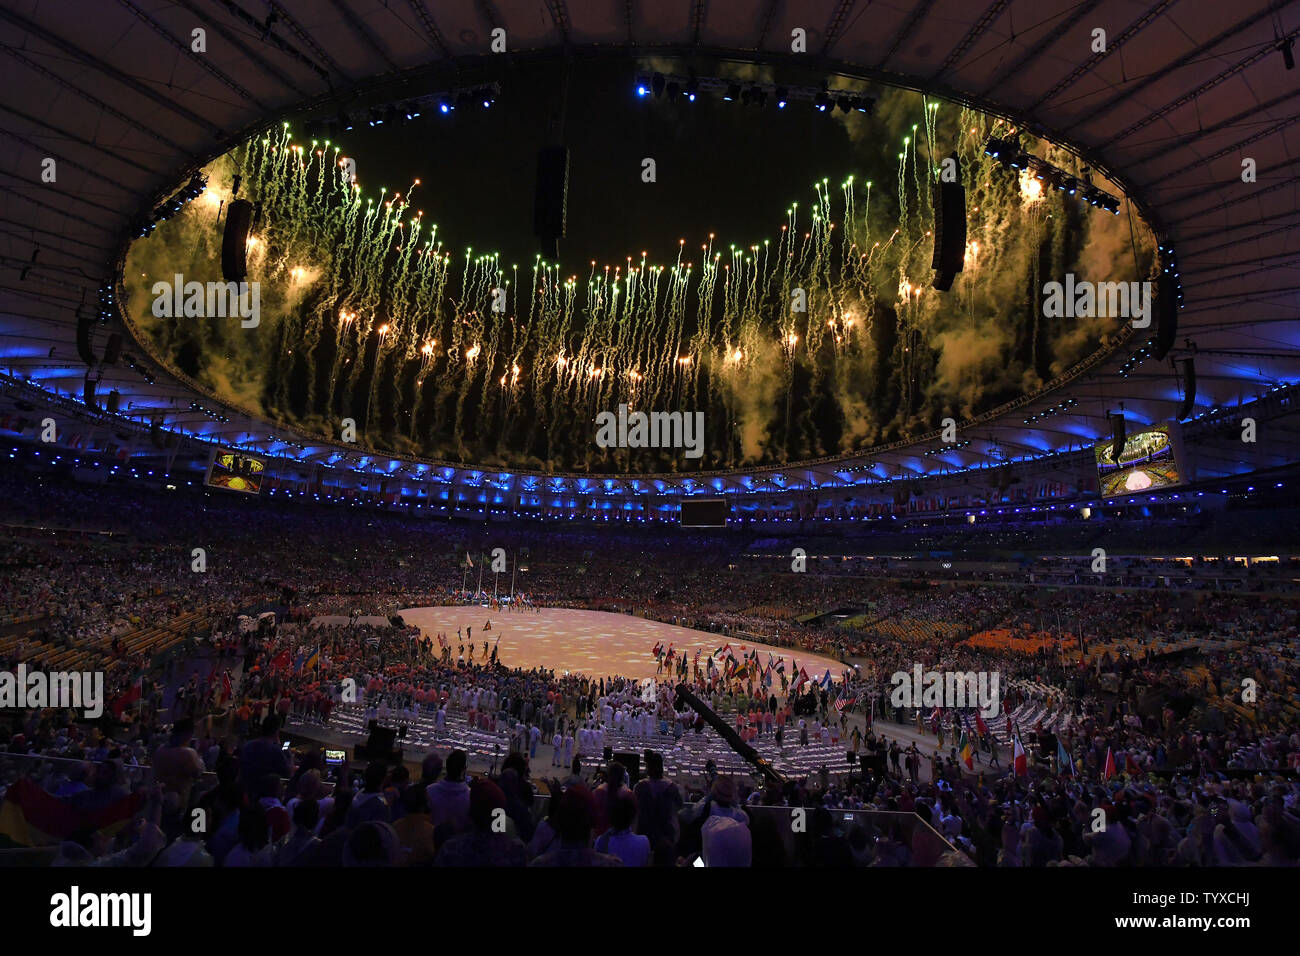 Feuerwerk Ring der oberen Ebenen bei der Schlussfeier in Maracan" Stadion am Rio olympische Sommerspiele 2016 in Rio de Janeiro, Brasilien, am 21. August 2016. Foto von Terry Schmitt/UPI Stockfoto